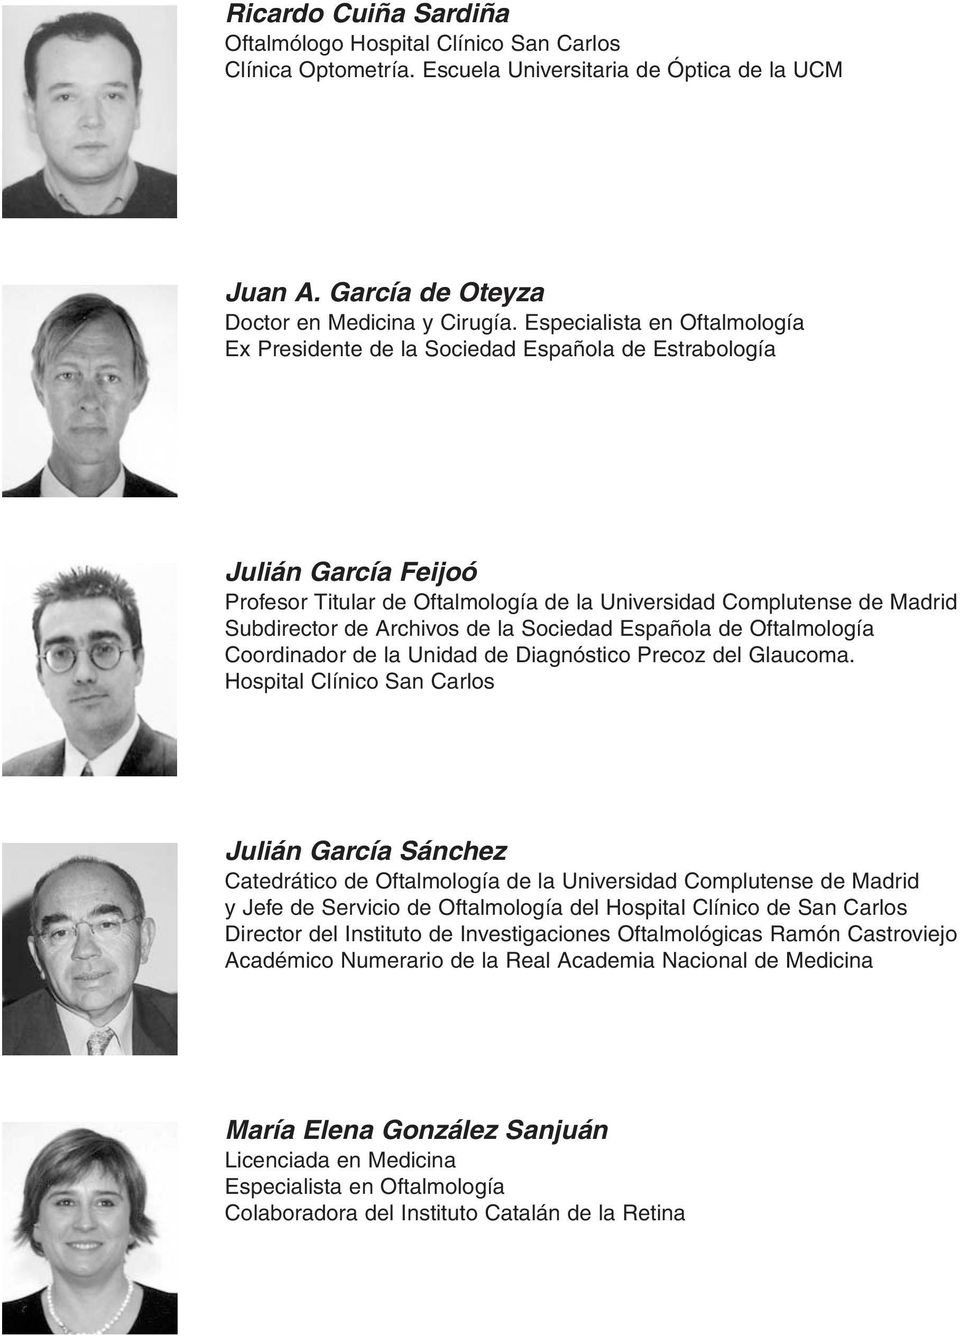 Archivos de la Sociedad Española de Oftalmología Coordinador de la Unidad de Diagnóstico Precoz del Glaucoma.